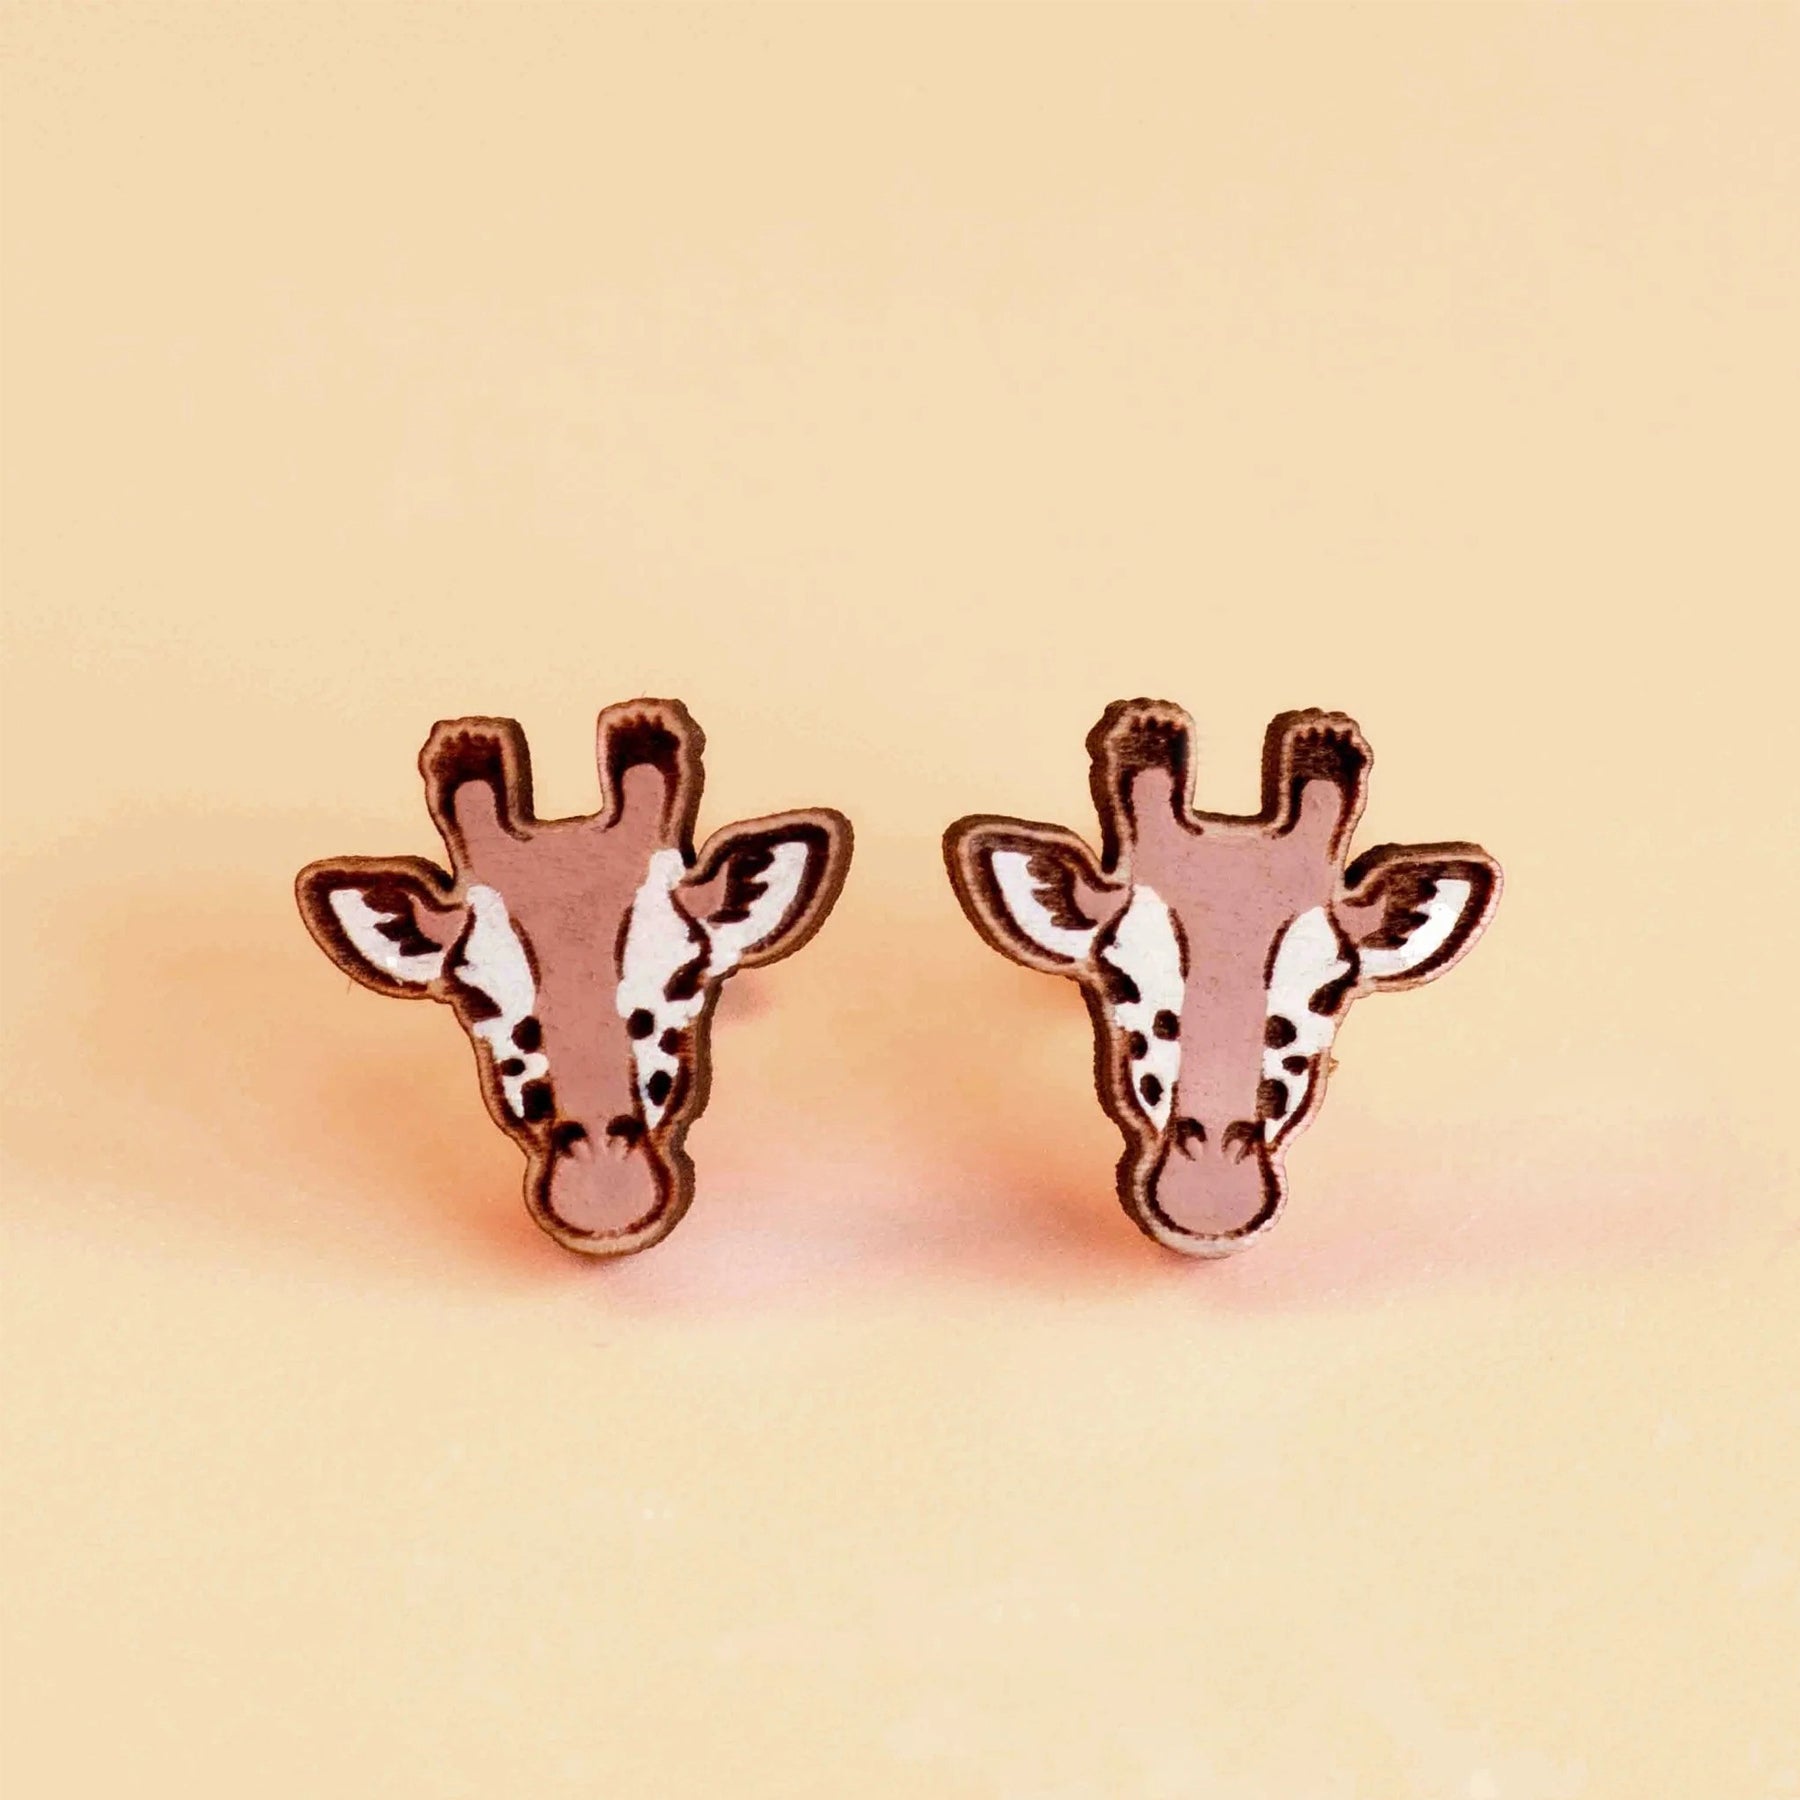 Giraffe hand-painted wood stud earrings